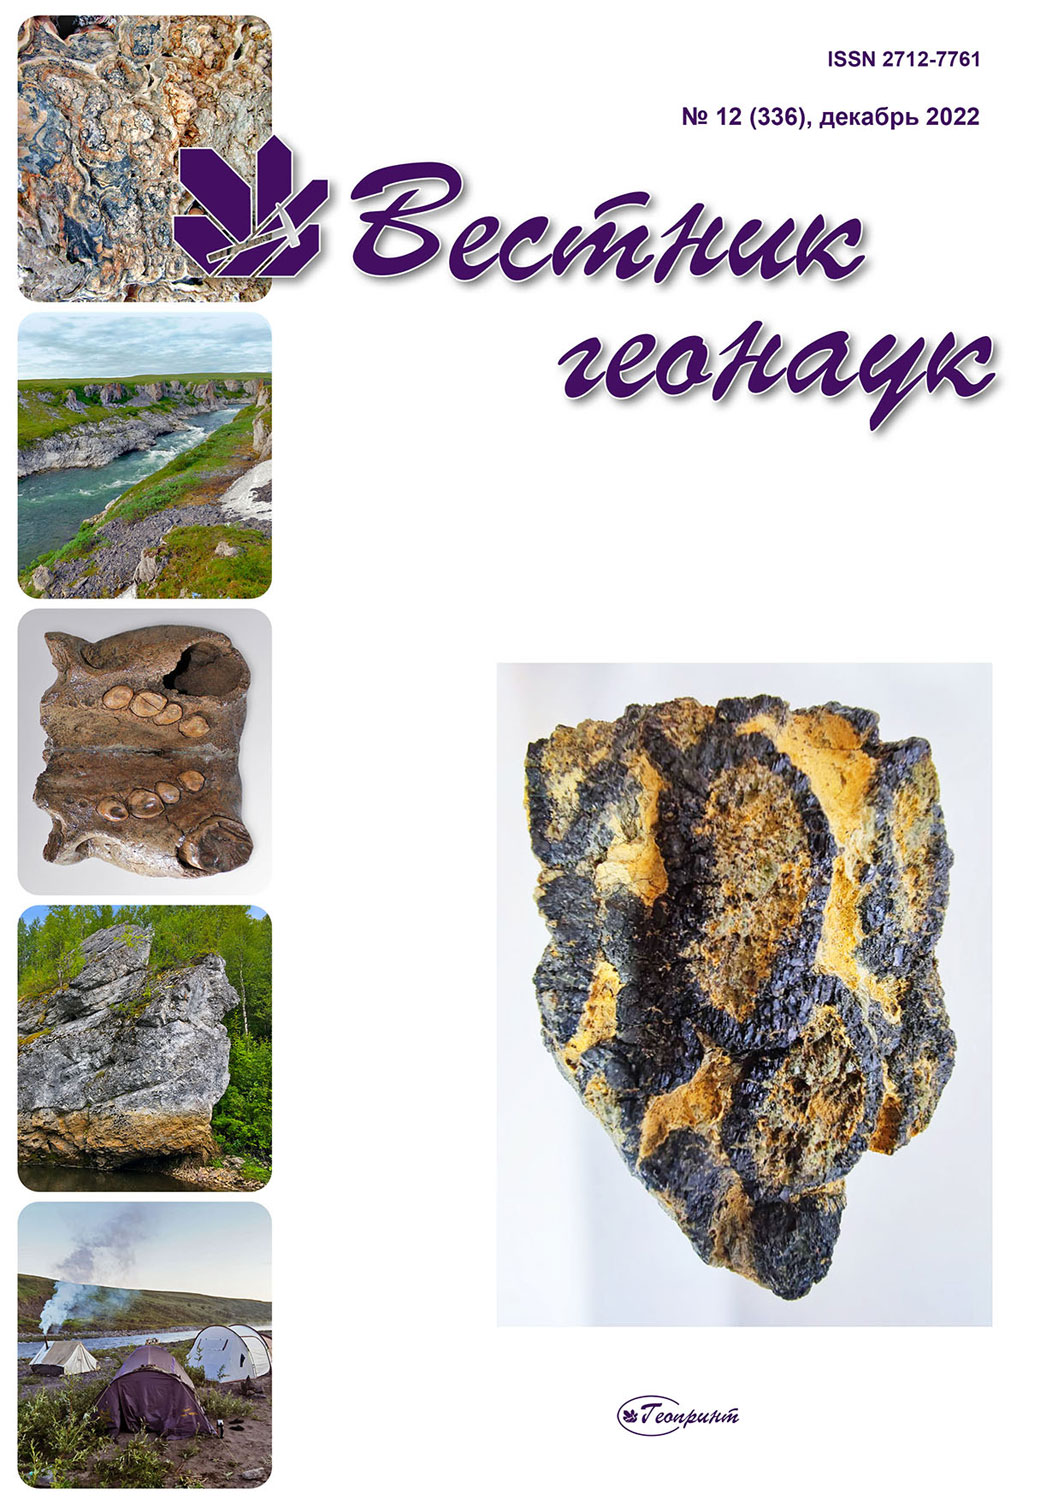             Предварительная минералогическая оценка отходов углеобогатительной фабрики «Кузнецкая»
    